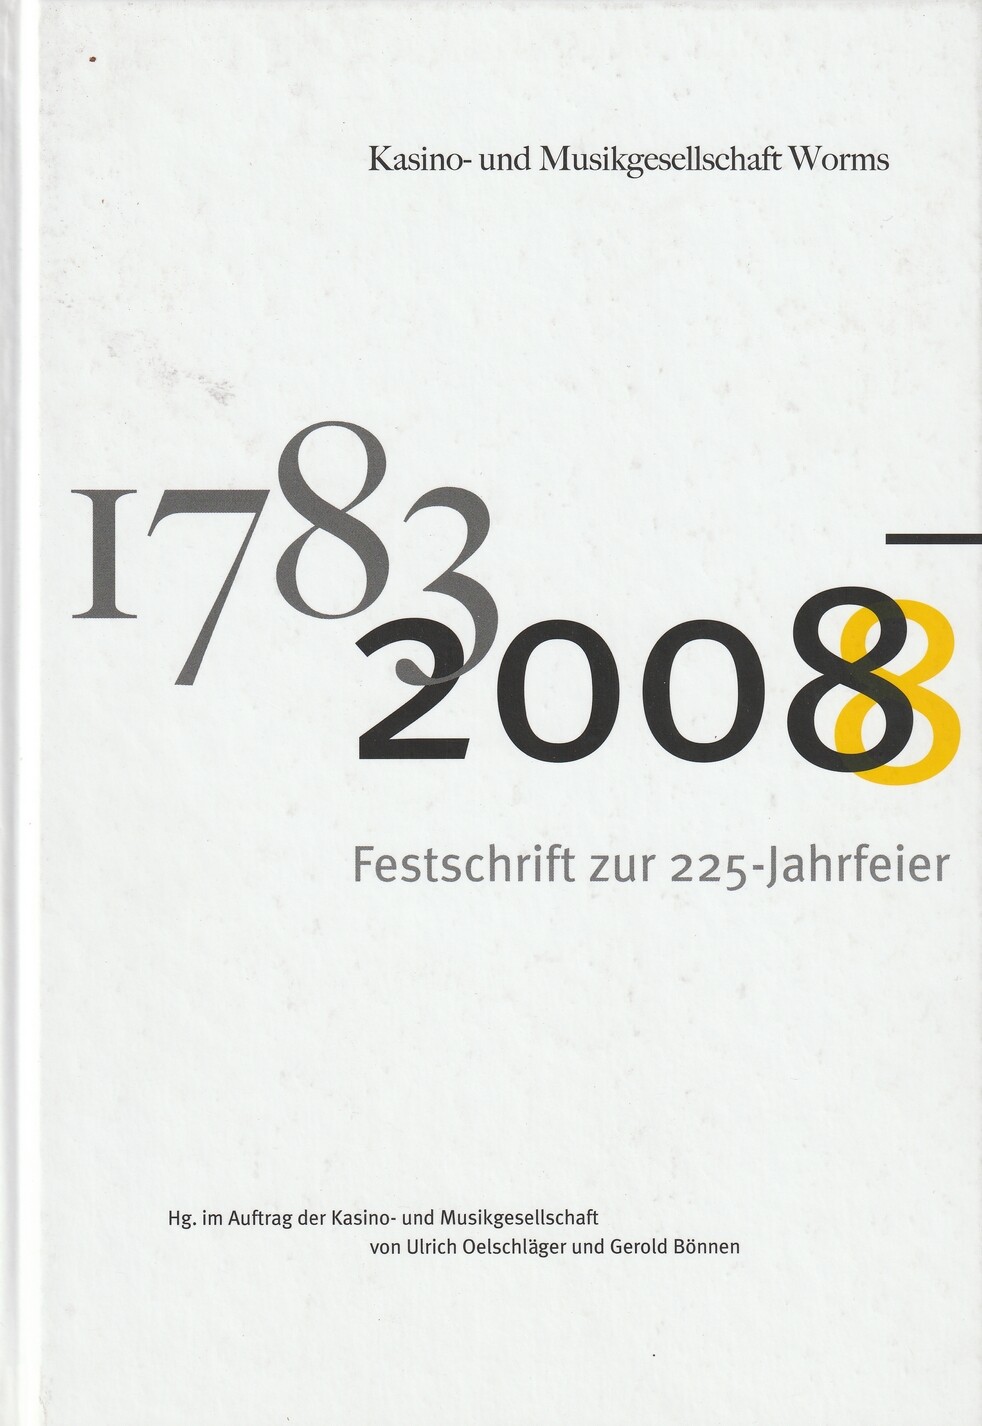 1783 - 2008 Vereinigte Kasino und Musikgesellschaft Worms (Kulturverein Guntersblum CC BY-NC-SA)